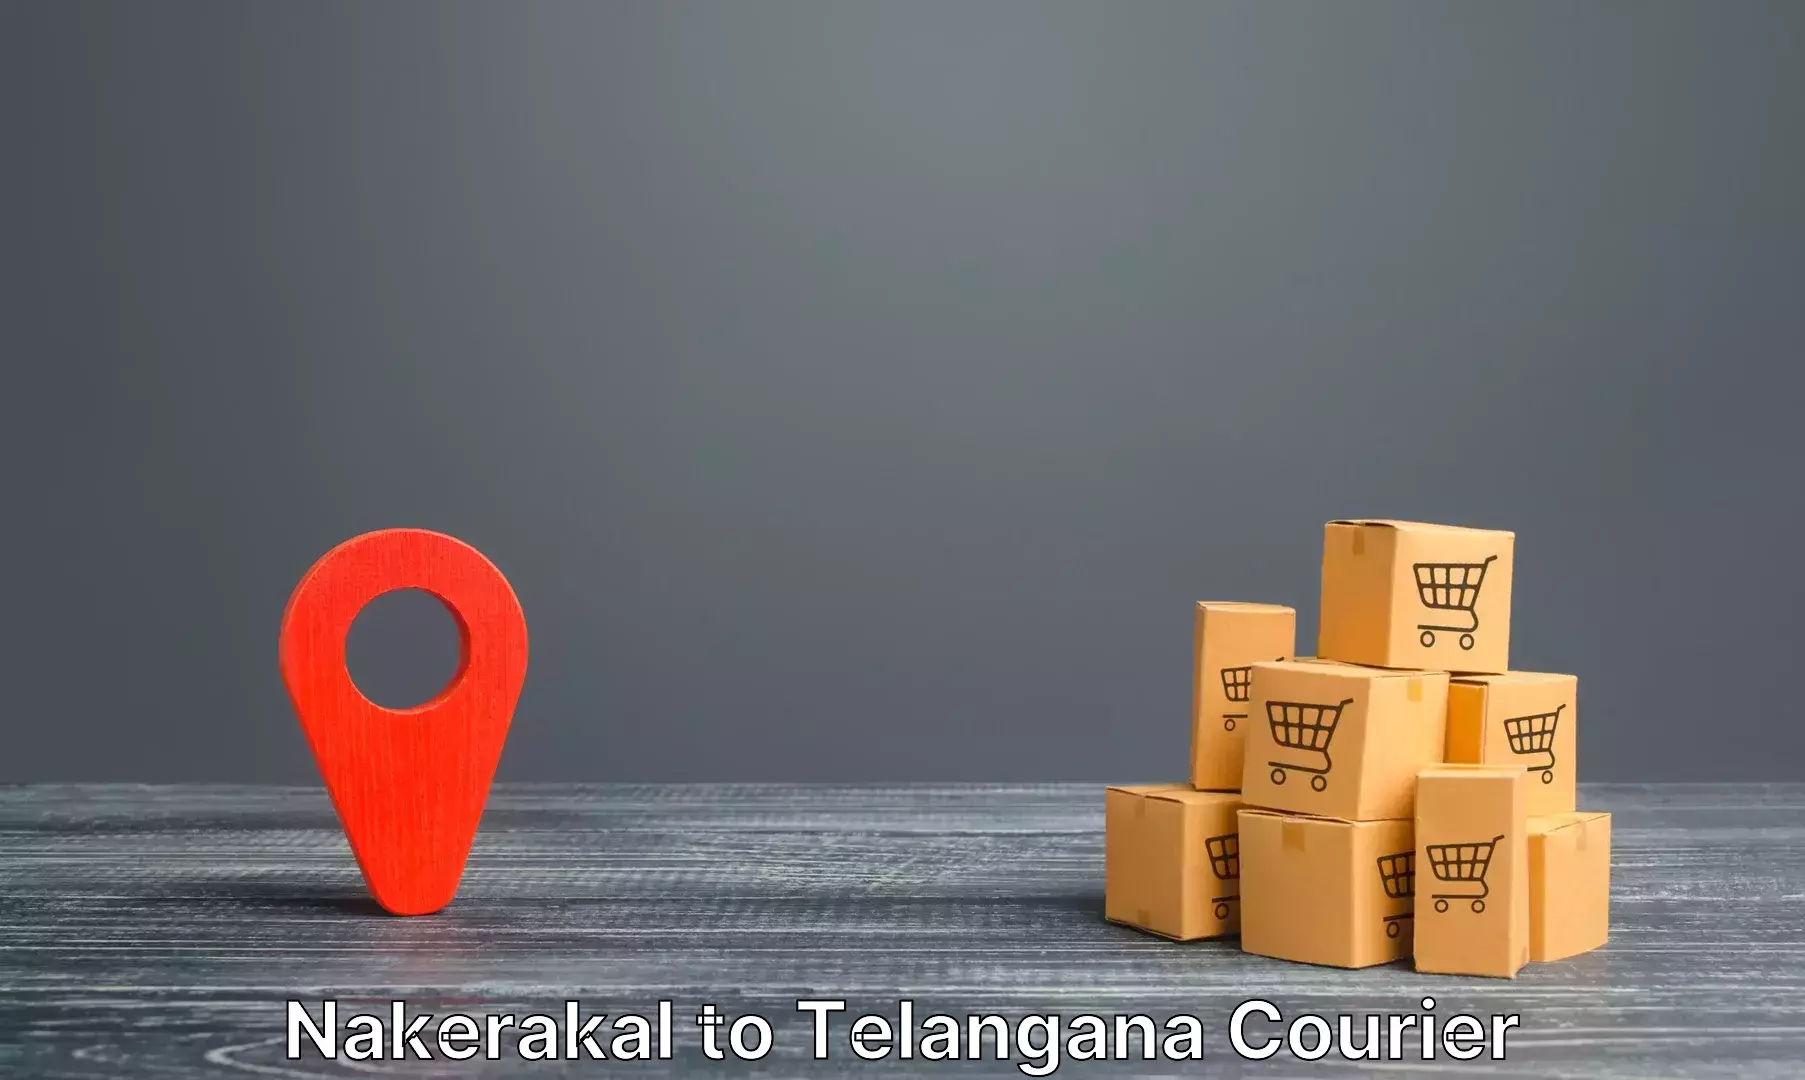 Hassle-free luggage shipping Nakerakal to Rudrangi